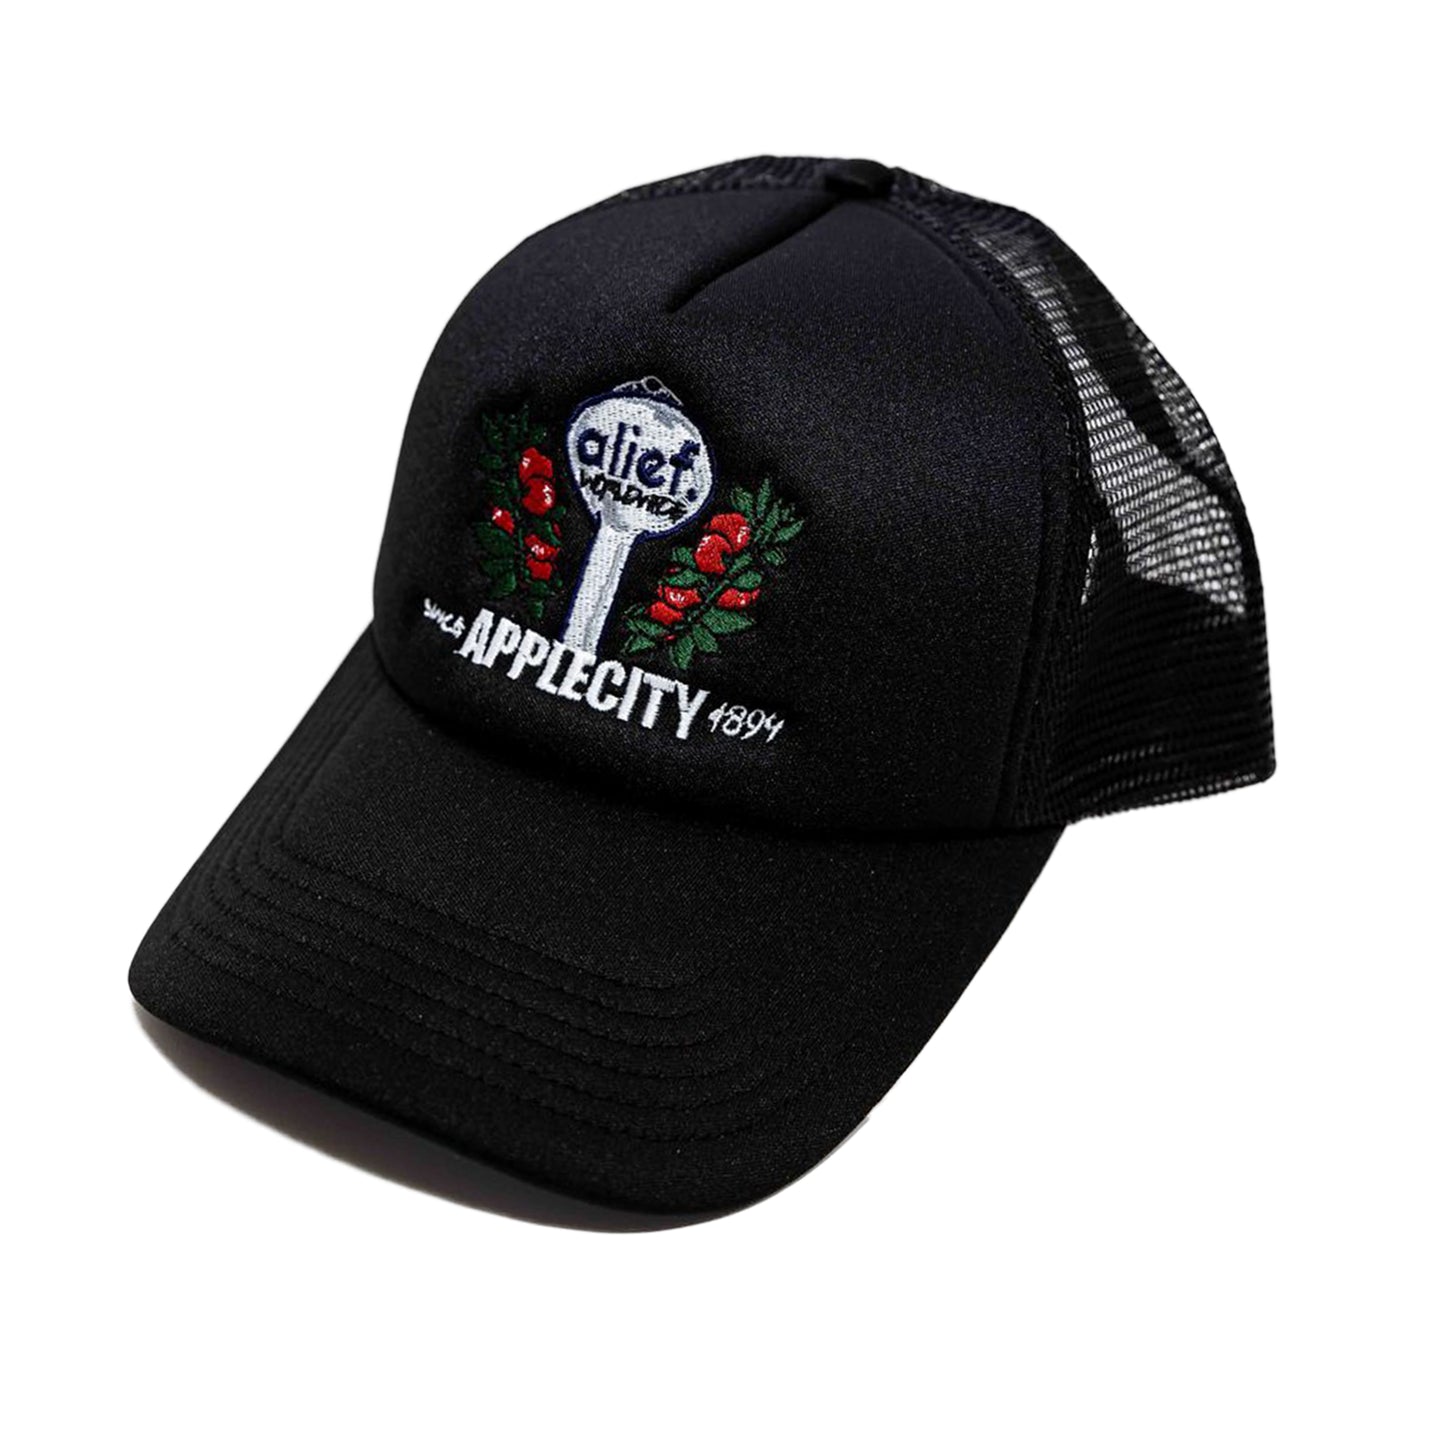 Alief Applecity Trucker Hat - Black